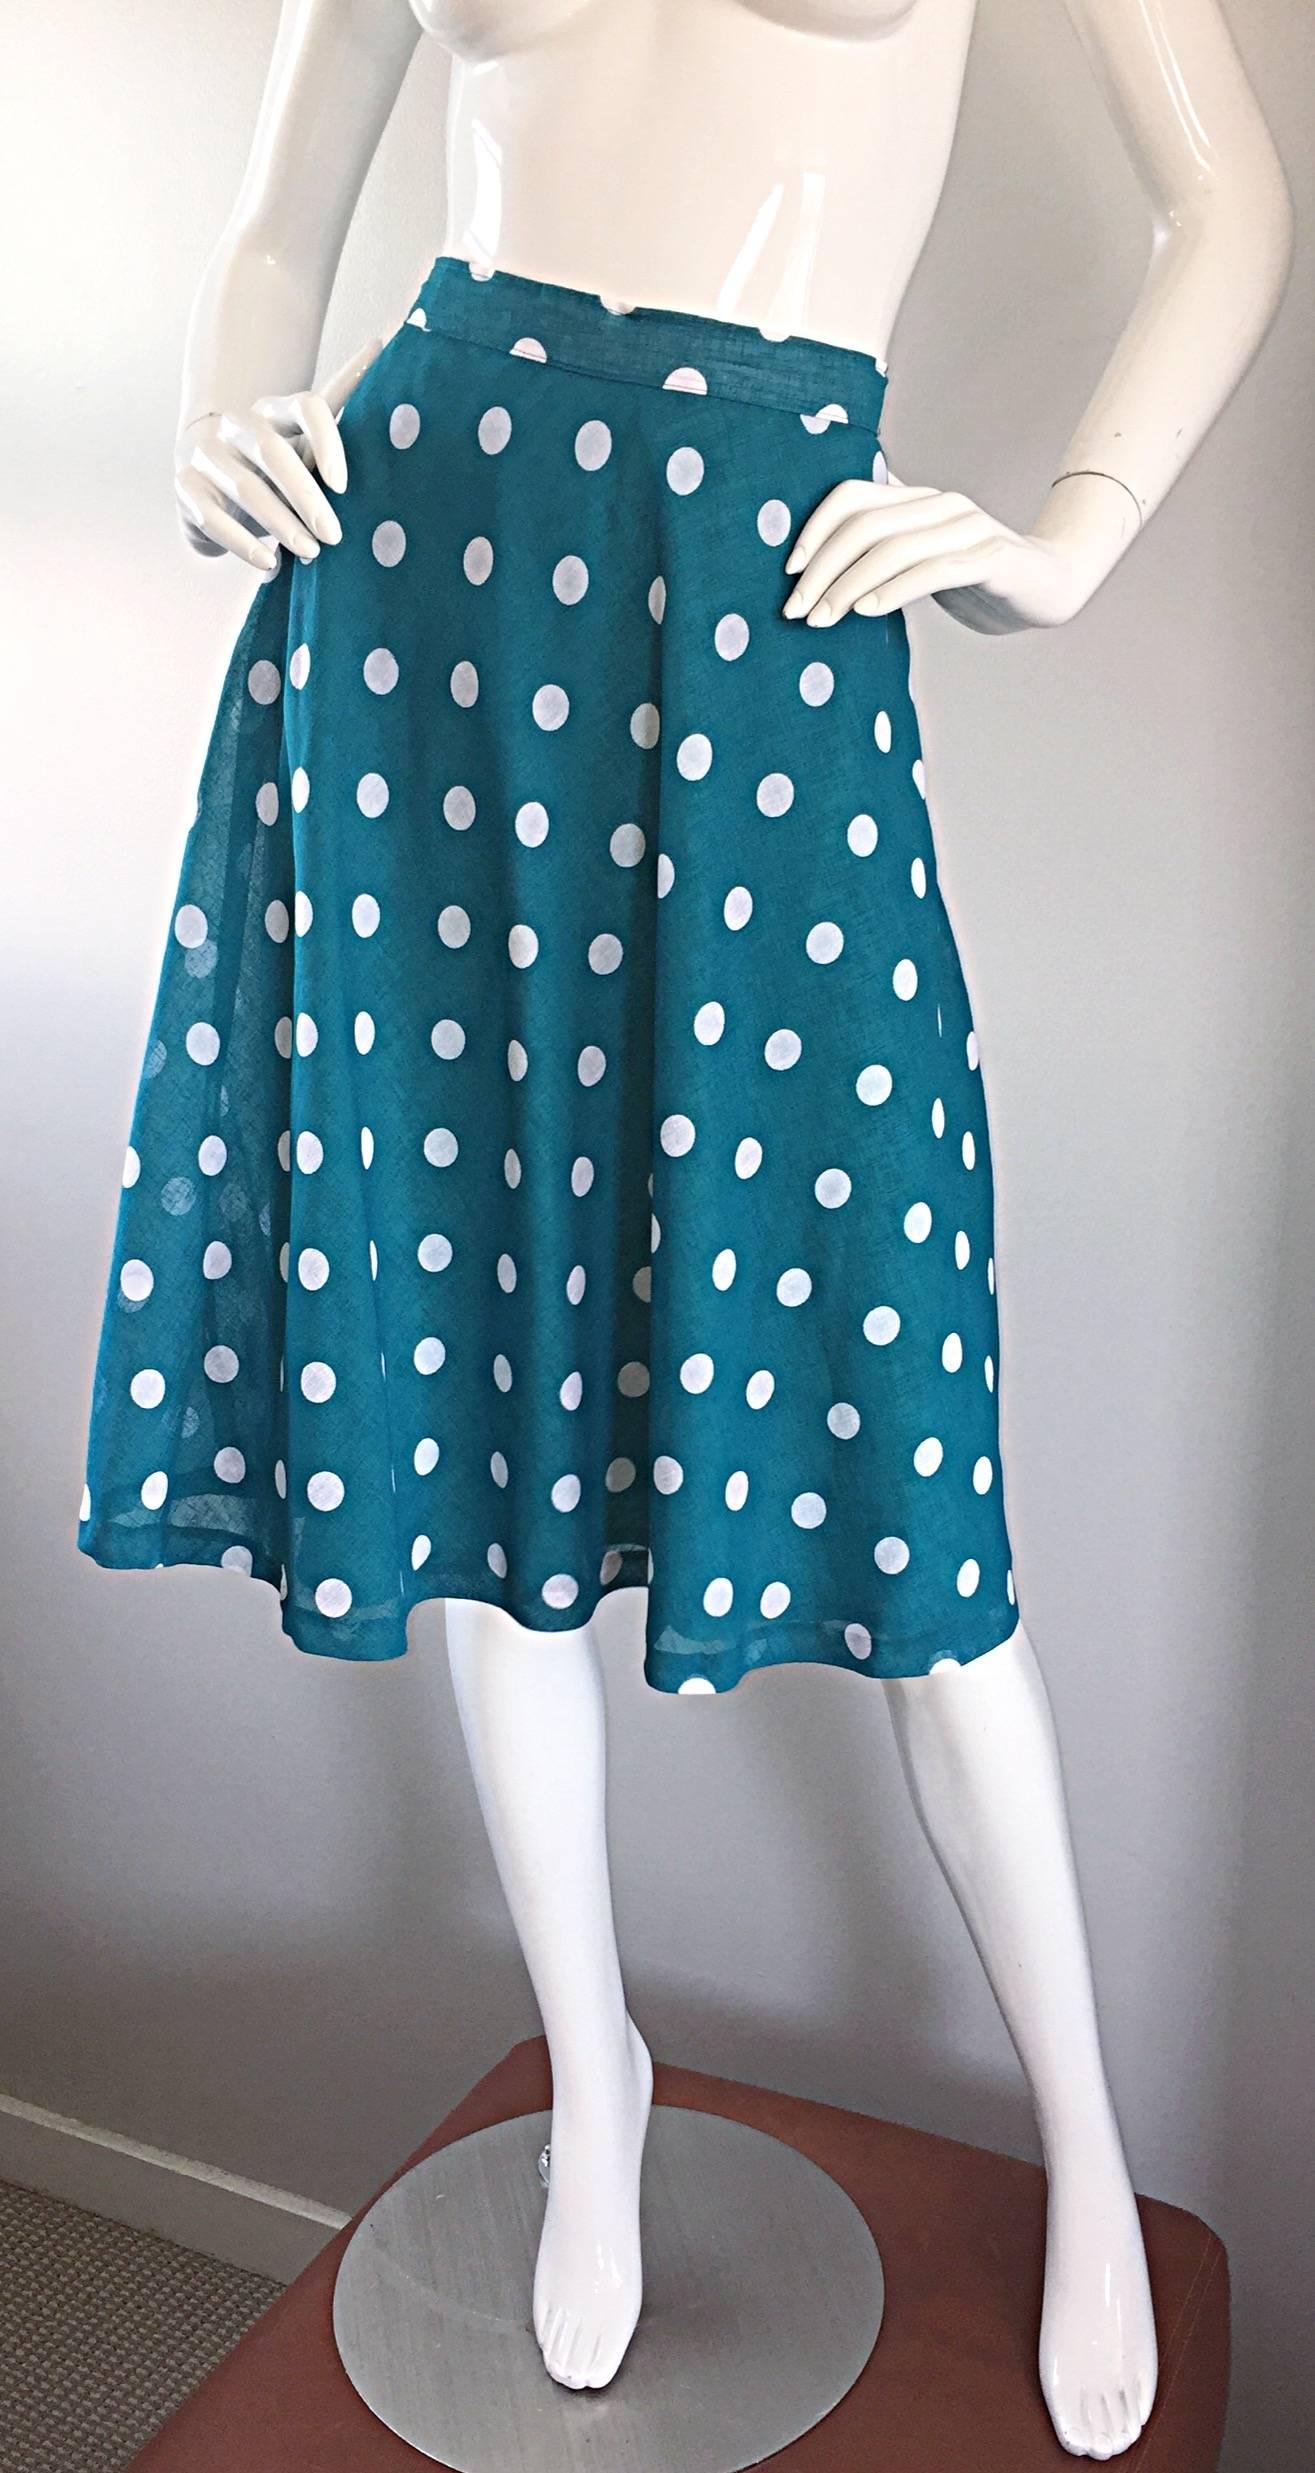 1950s polka dot skirt